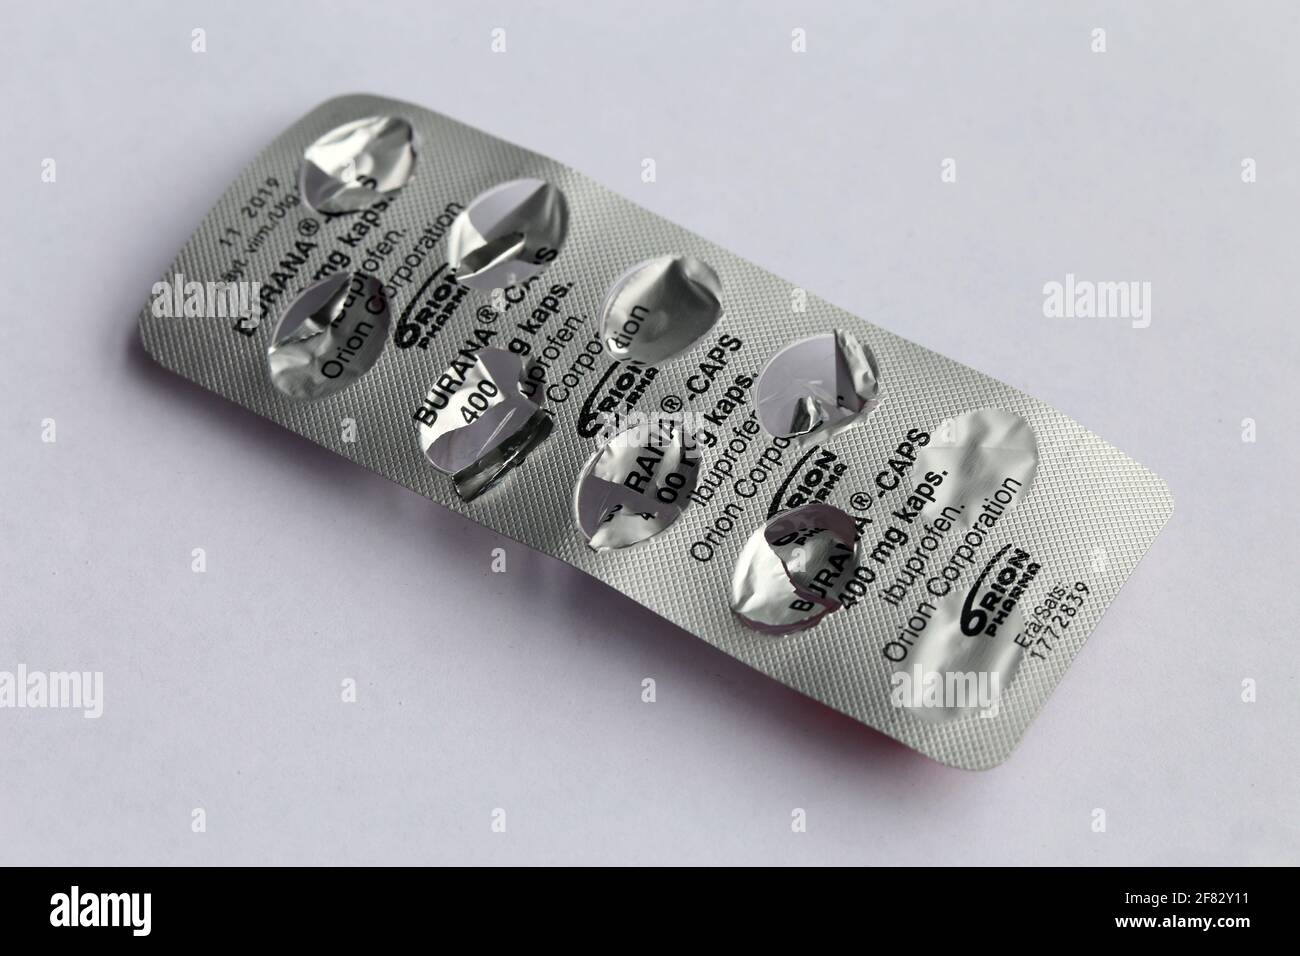 Ibuprofen (Burana 400mg) capsule, questo è un farmaco antinfiammatorio non steroideo (FANS) che allevia il dolore e trattare l'infiammazione. Foto Stock